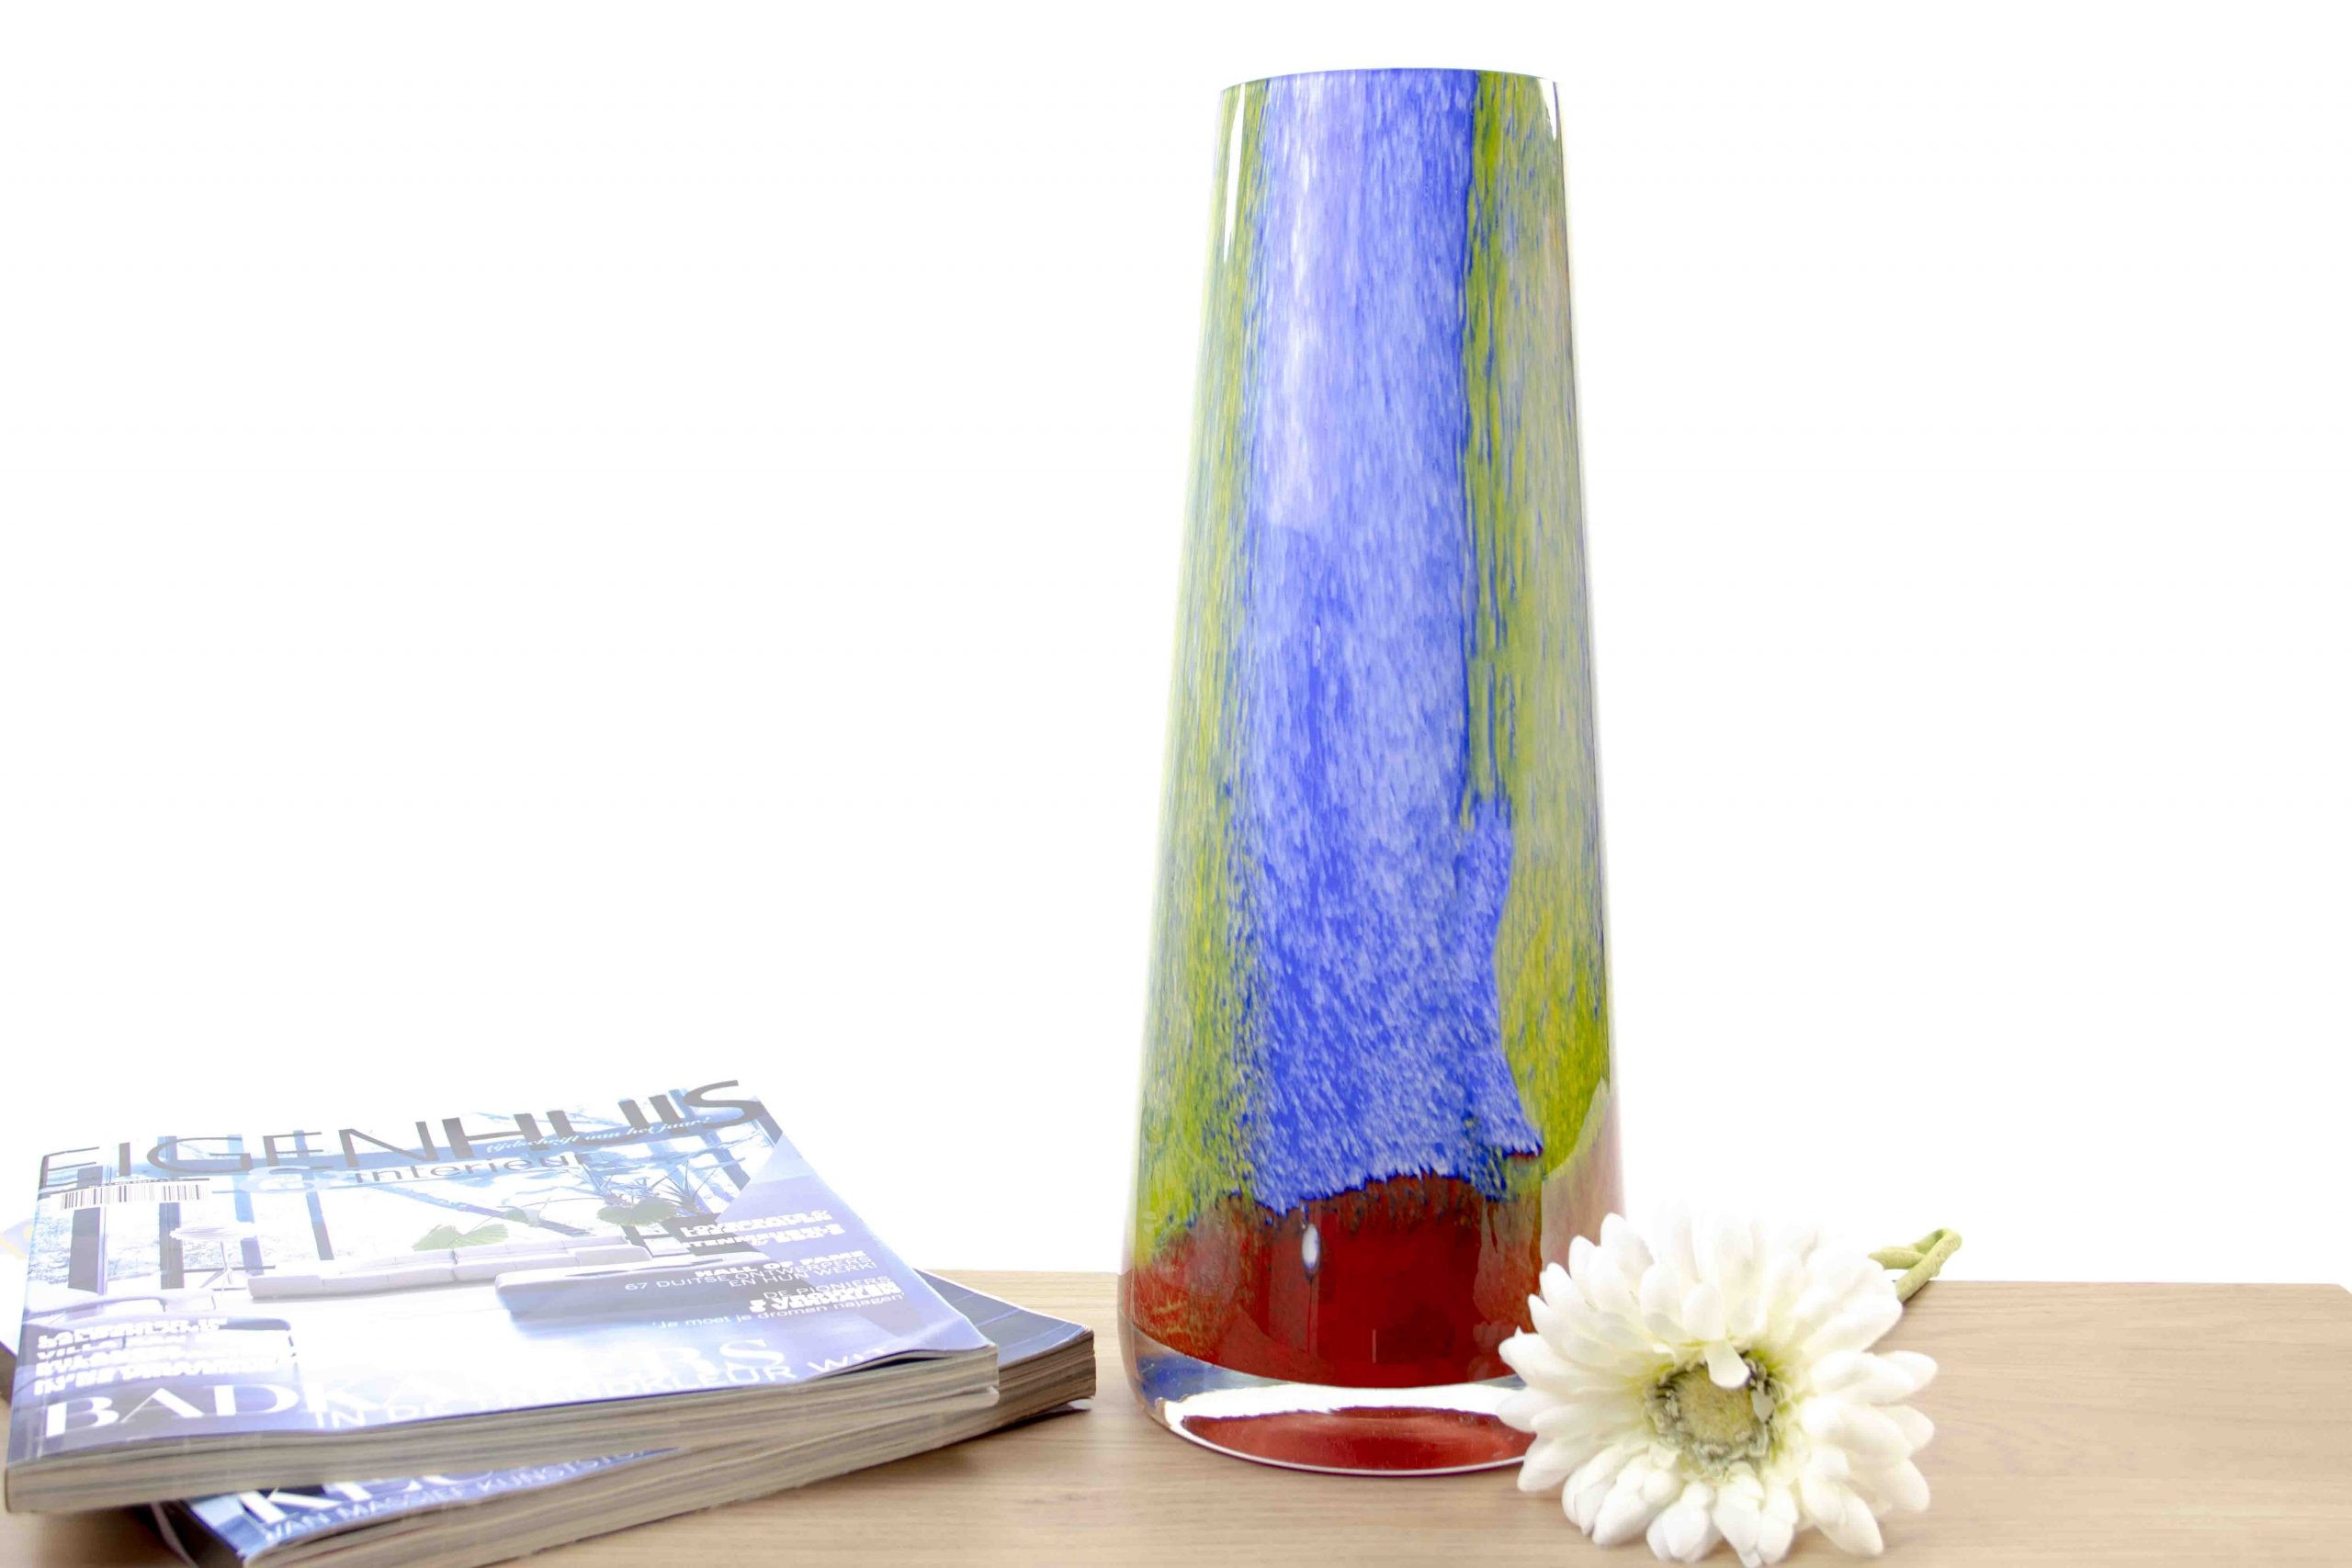 Dosering Geval Weigering Glazen vaas Marine van Loranto - 35 cm, blauw, groen, rood - City of Glass